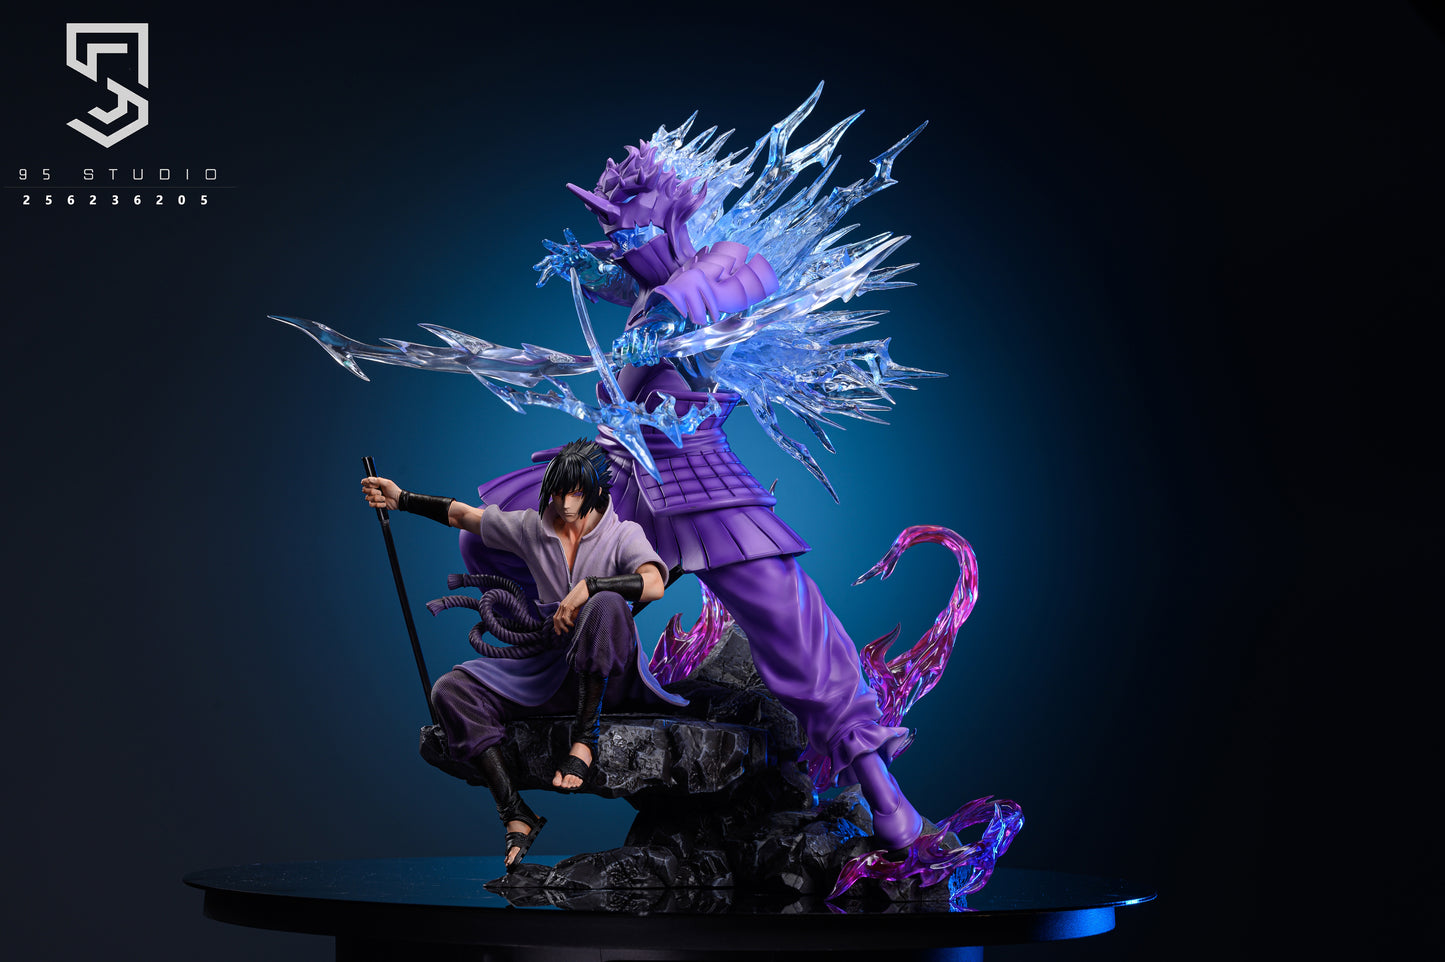 Sasuke Uchiha Purple Susanoo Model Statue Action Figure Figurine Naruto